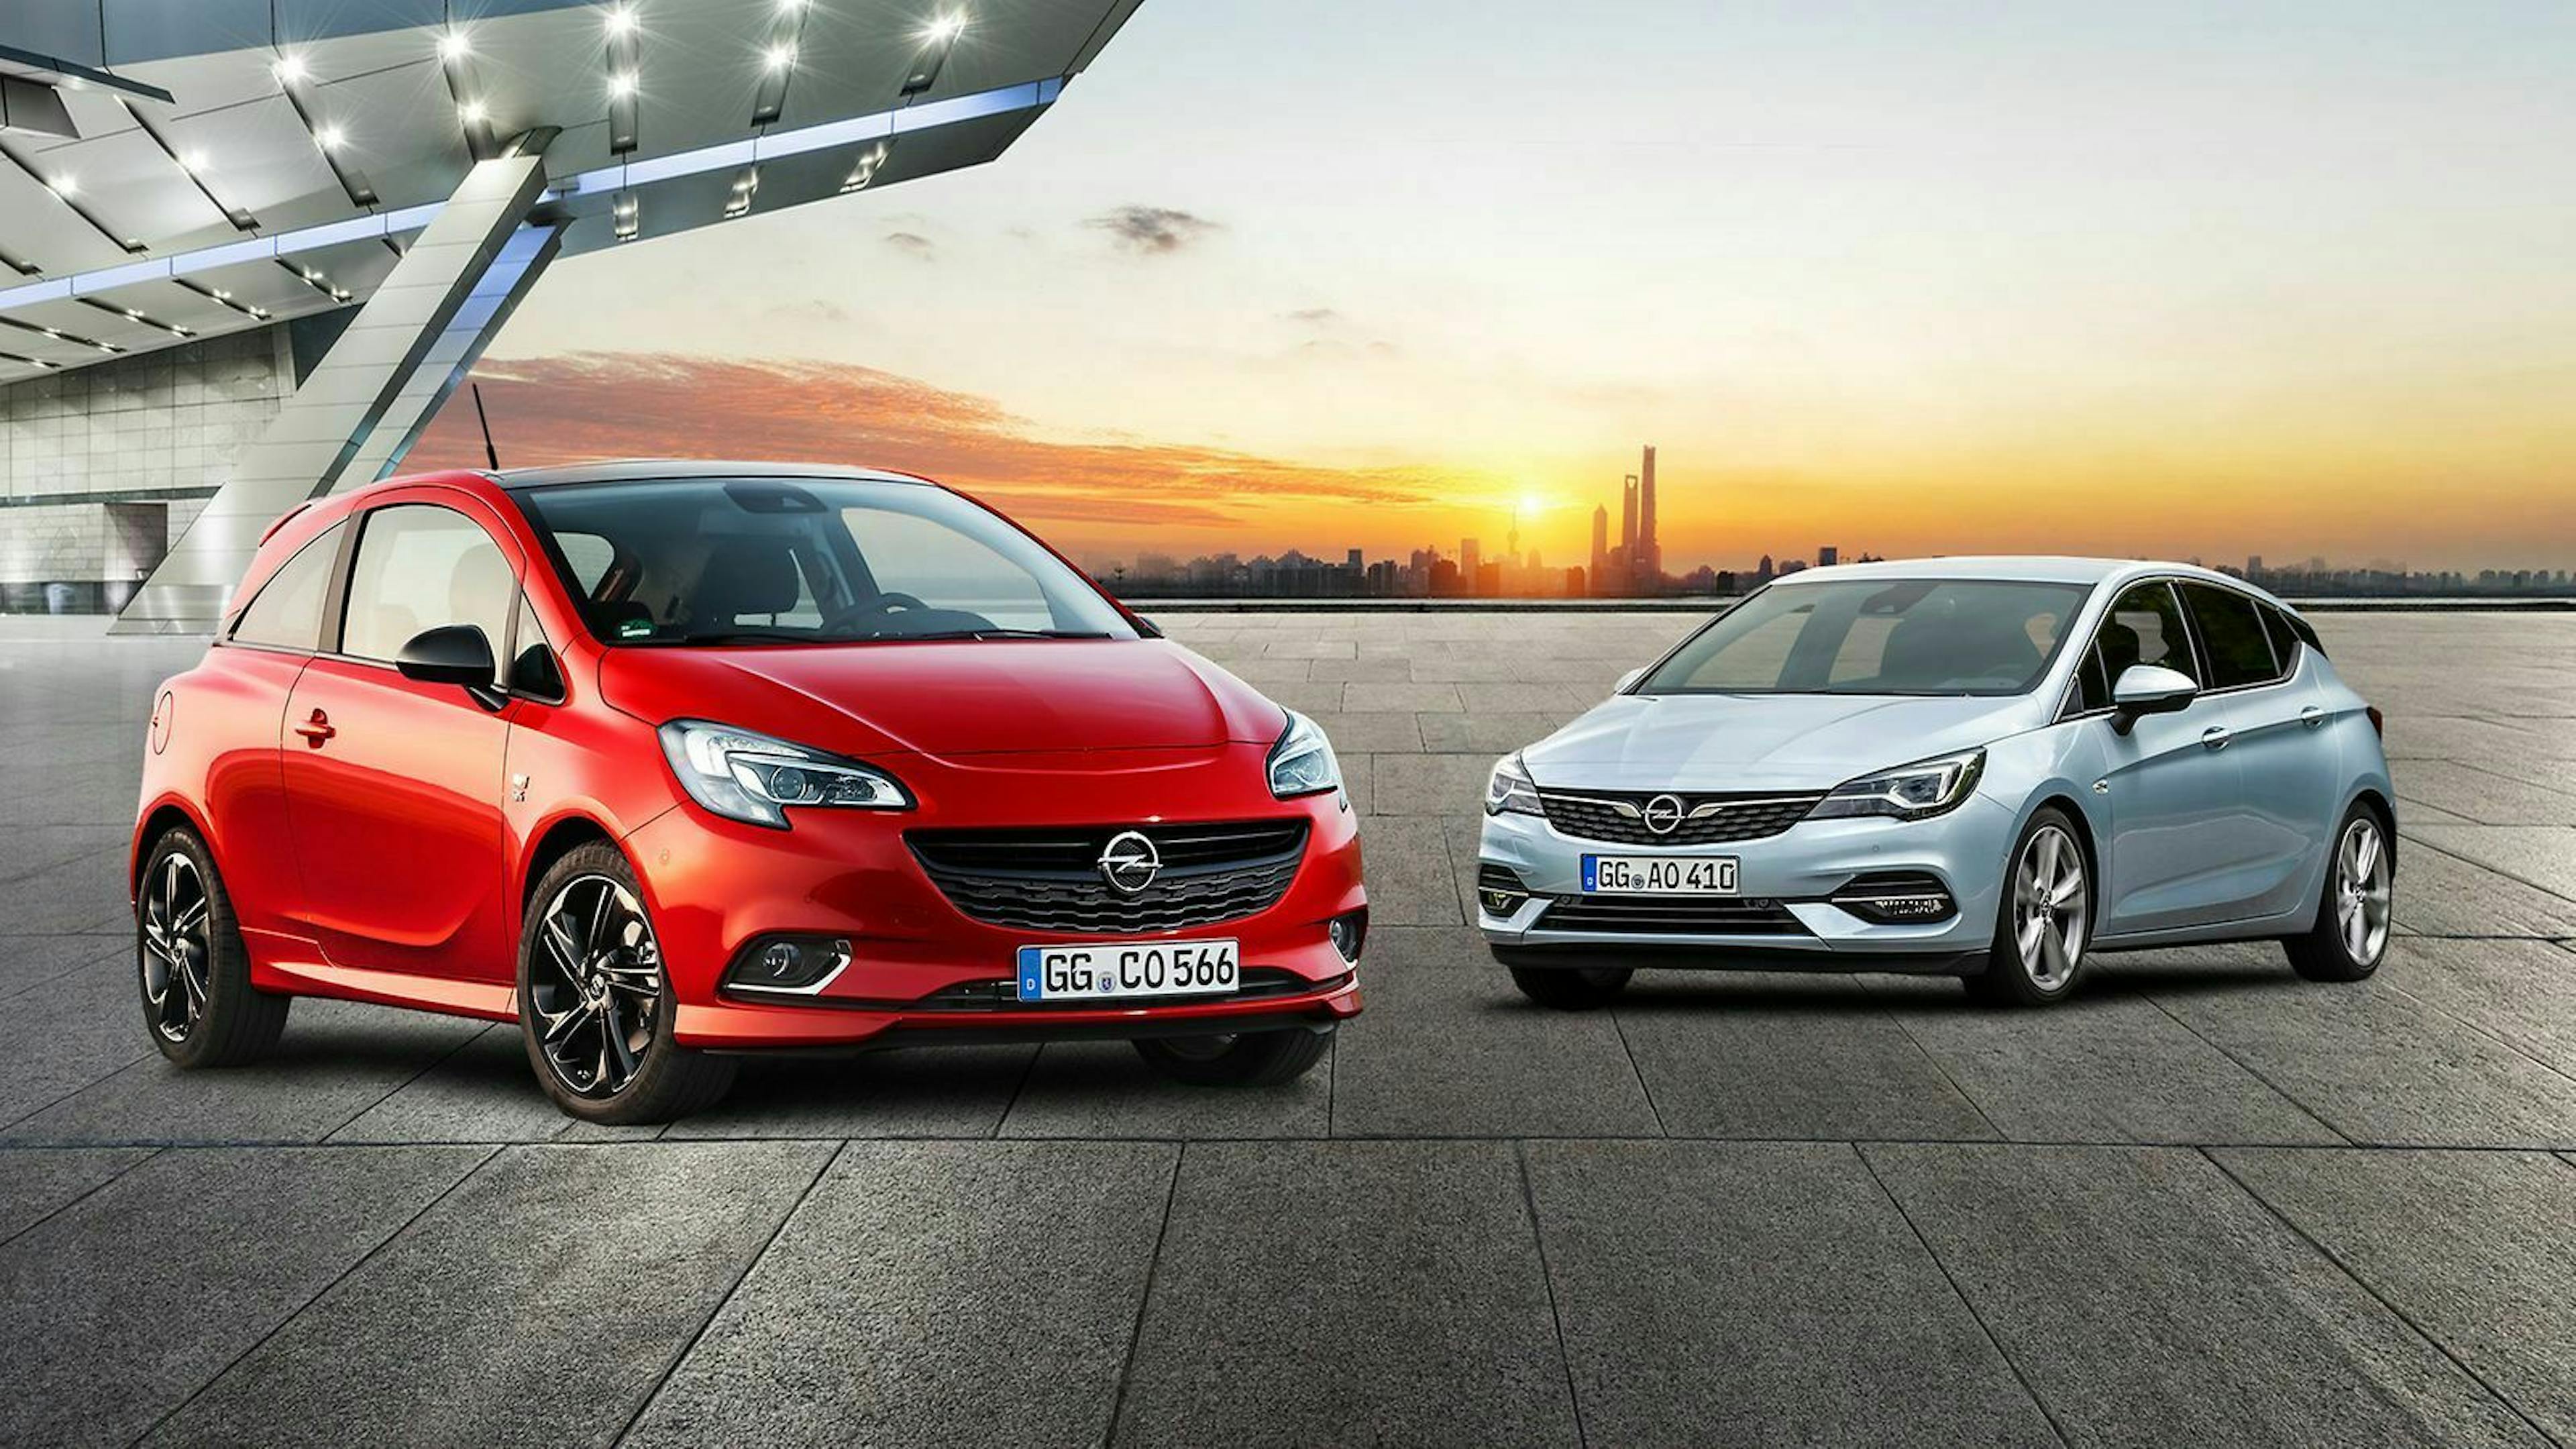 Zu sehen sind der Opel Corsa links und der Opel Astra rechts